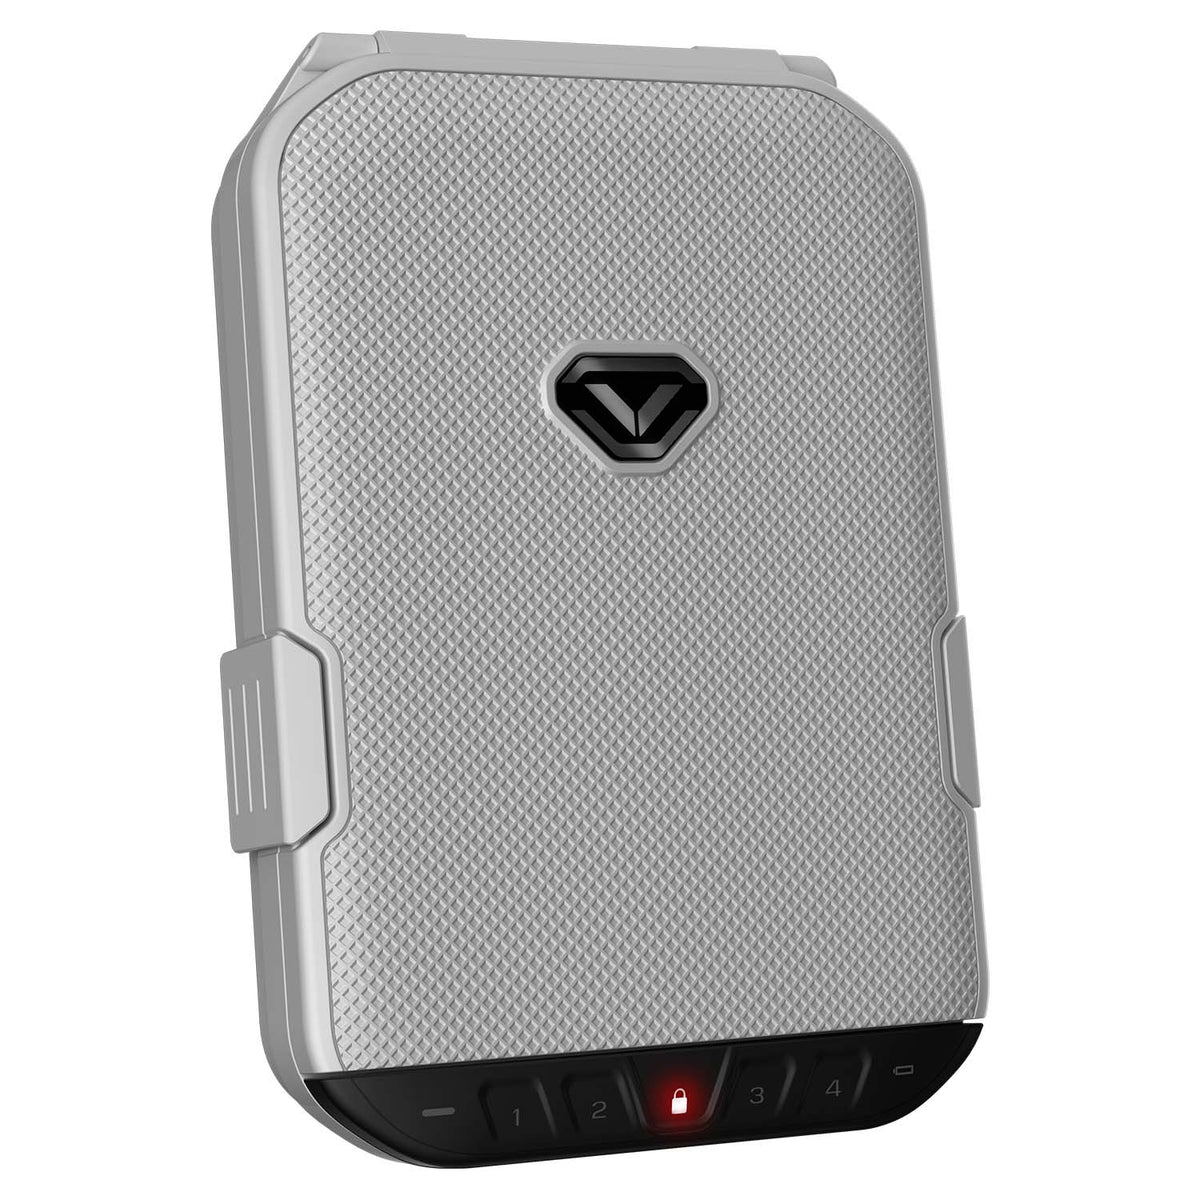 Vaultek - LifePod Secure Weather Resistant Keypad Gun Safe with Built-in Lock System